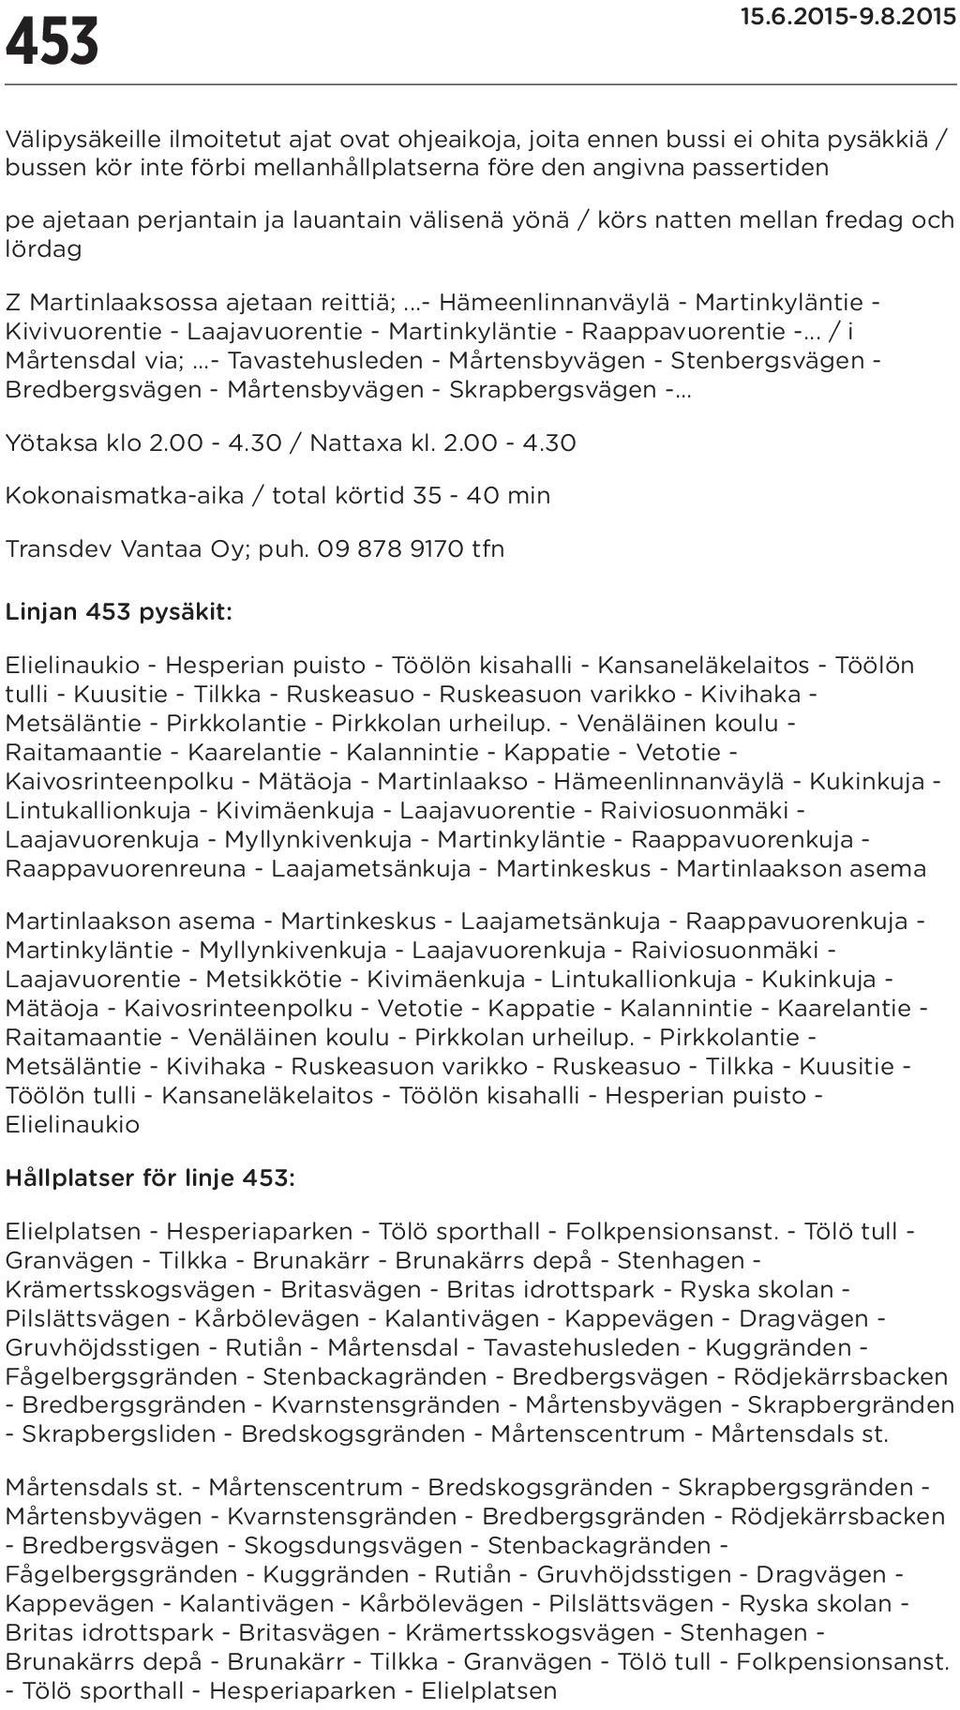 .. / i Mårtensdal via;...- Tavastehusleden - Mårtensbyvägen - Stenbergsvägen - Bredbergsvägen - Mårtensbyvägen - Skrapbergsvägen -... Yötaksa klo 2.00-4.